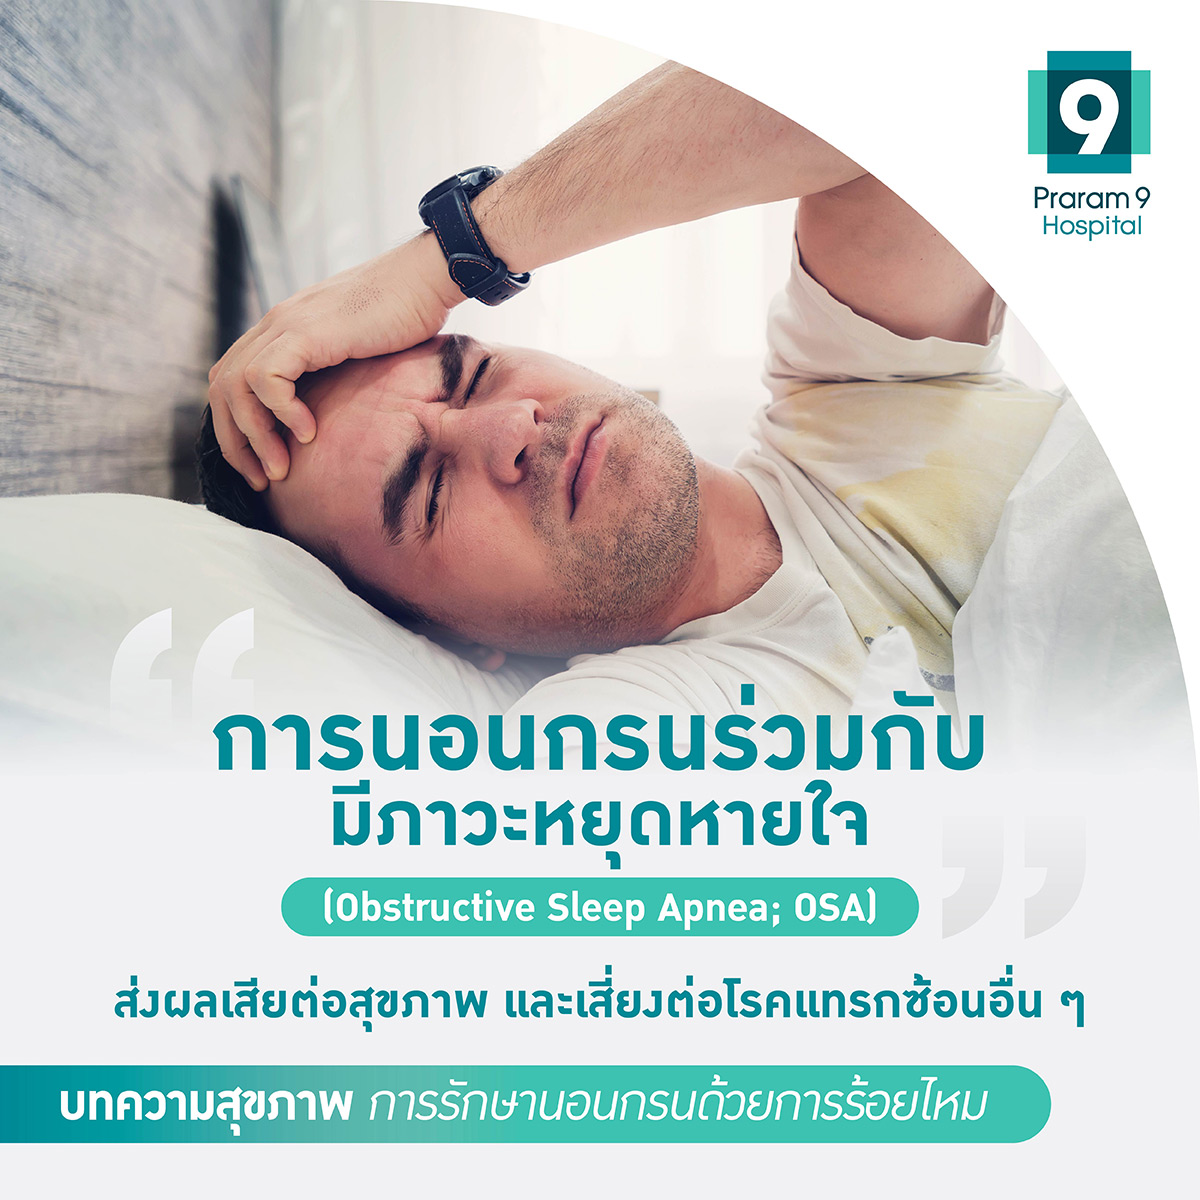 การนอนกรนร่วมกับภาวะหยุดหายใจส่งผลเสียต่อสุขภาพ